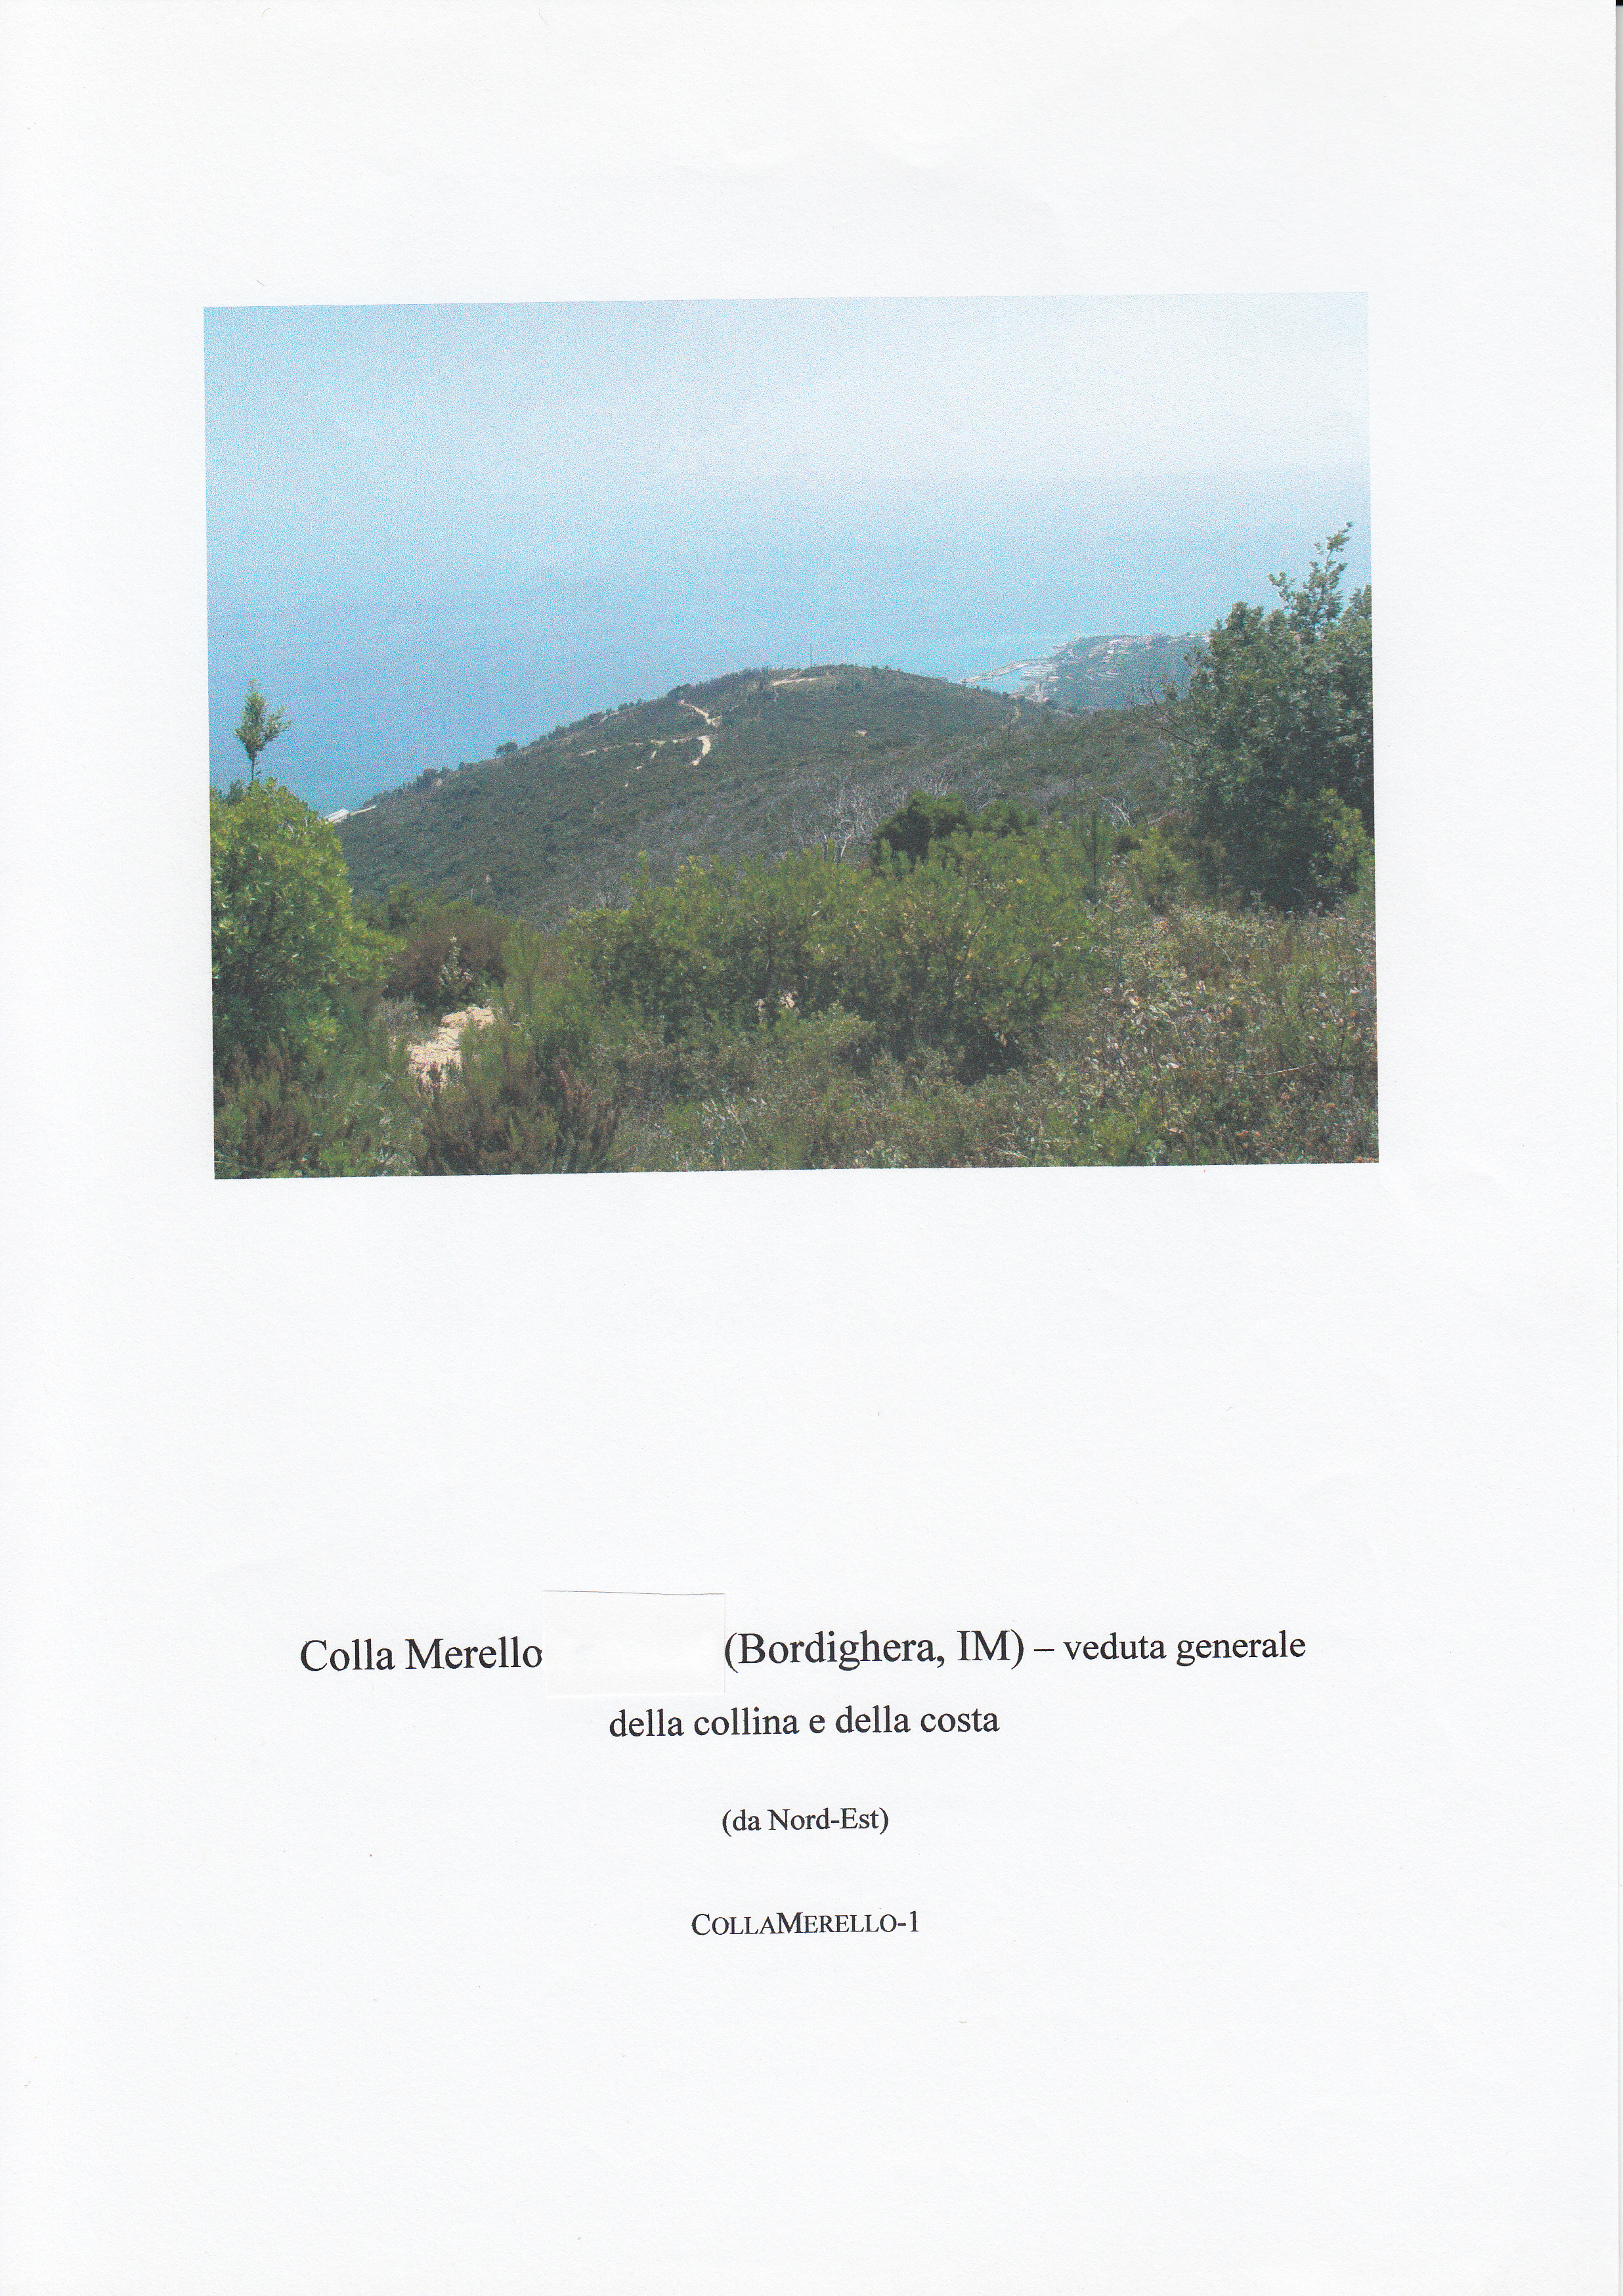 COLLA MERELLO-ENAMURAI (insediamento, tracce di insediamento) - Bordighera (IM)  (Eta' romana)